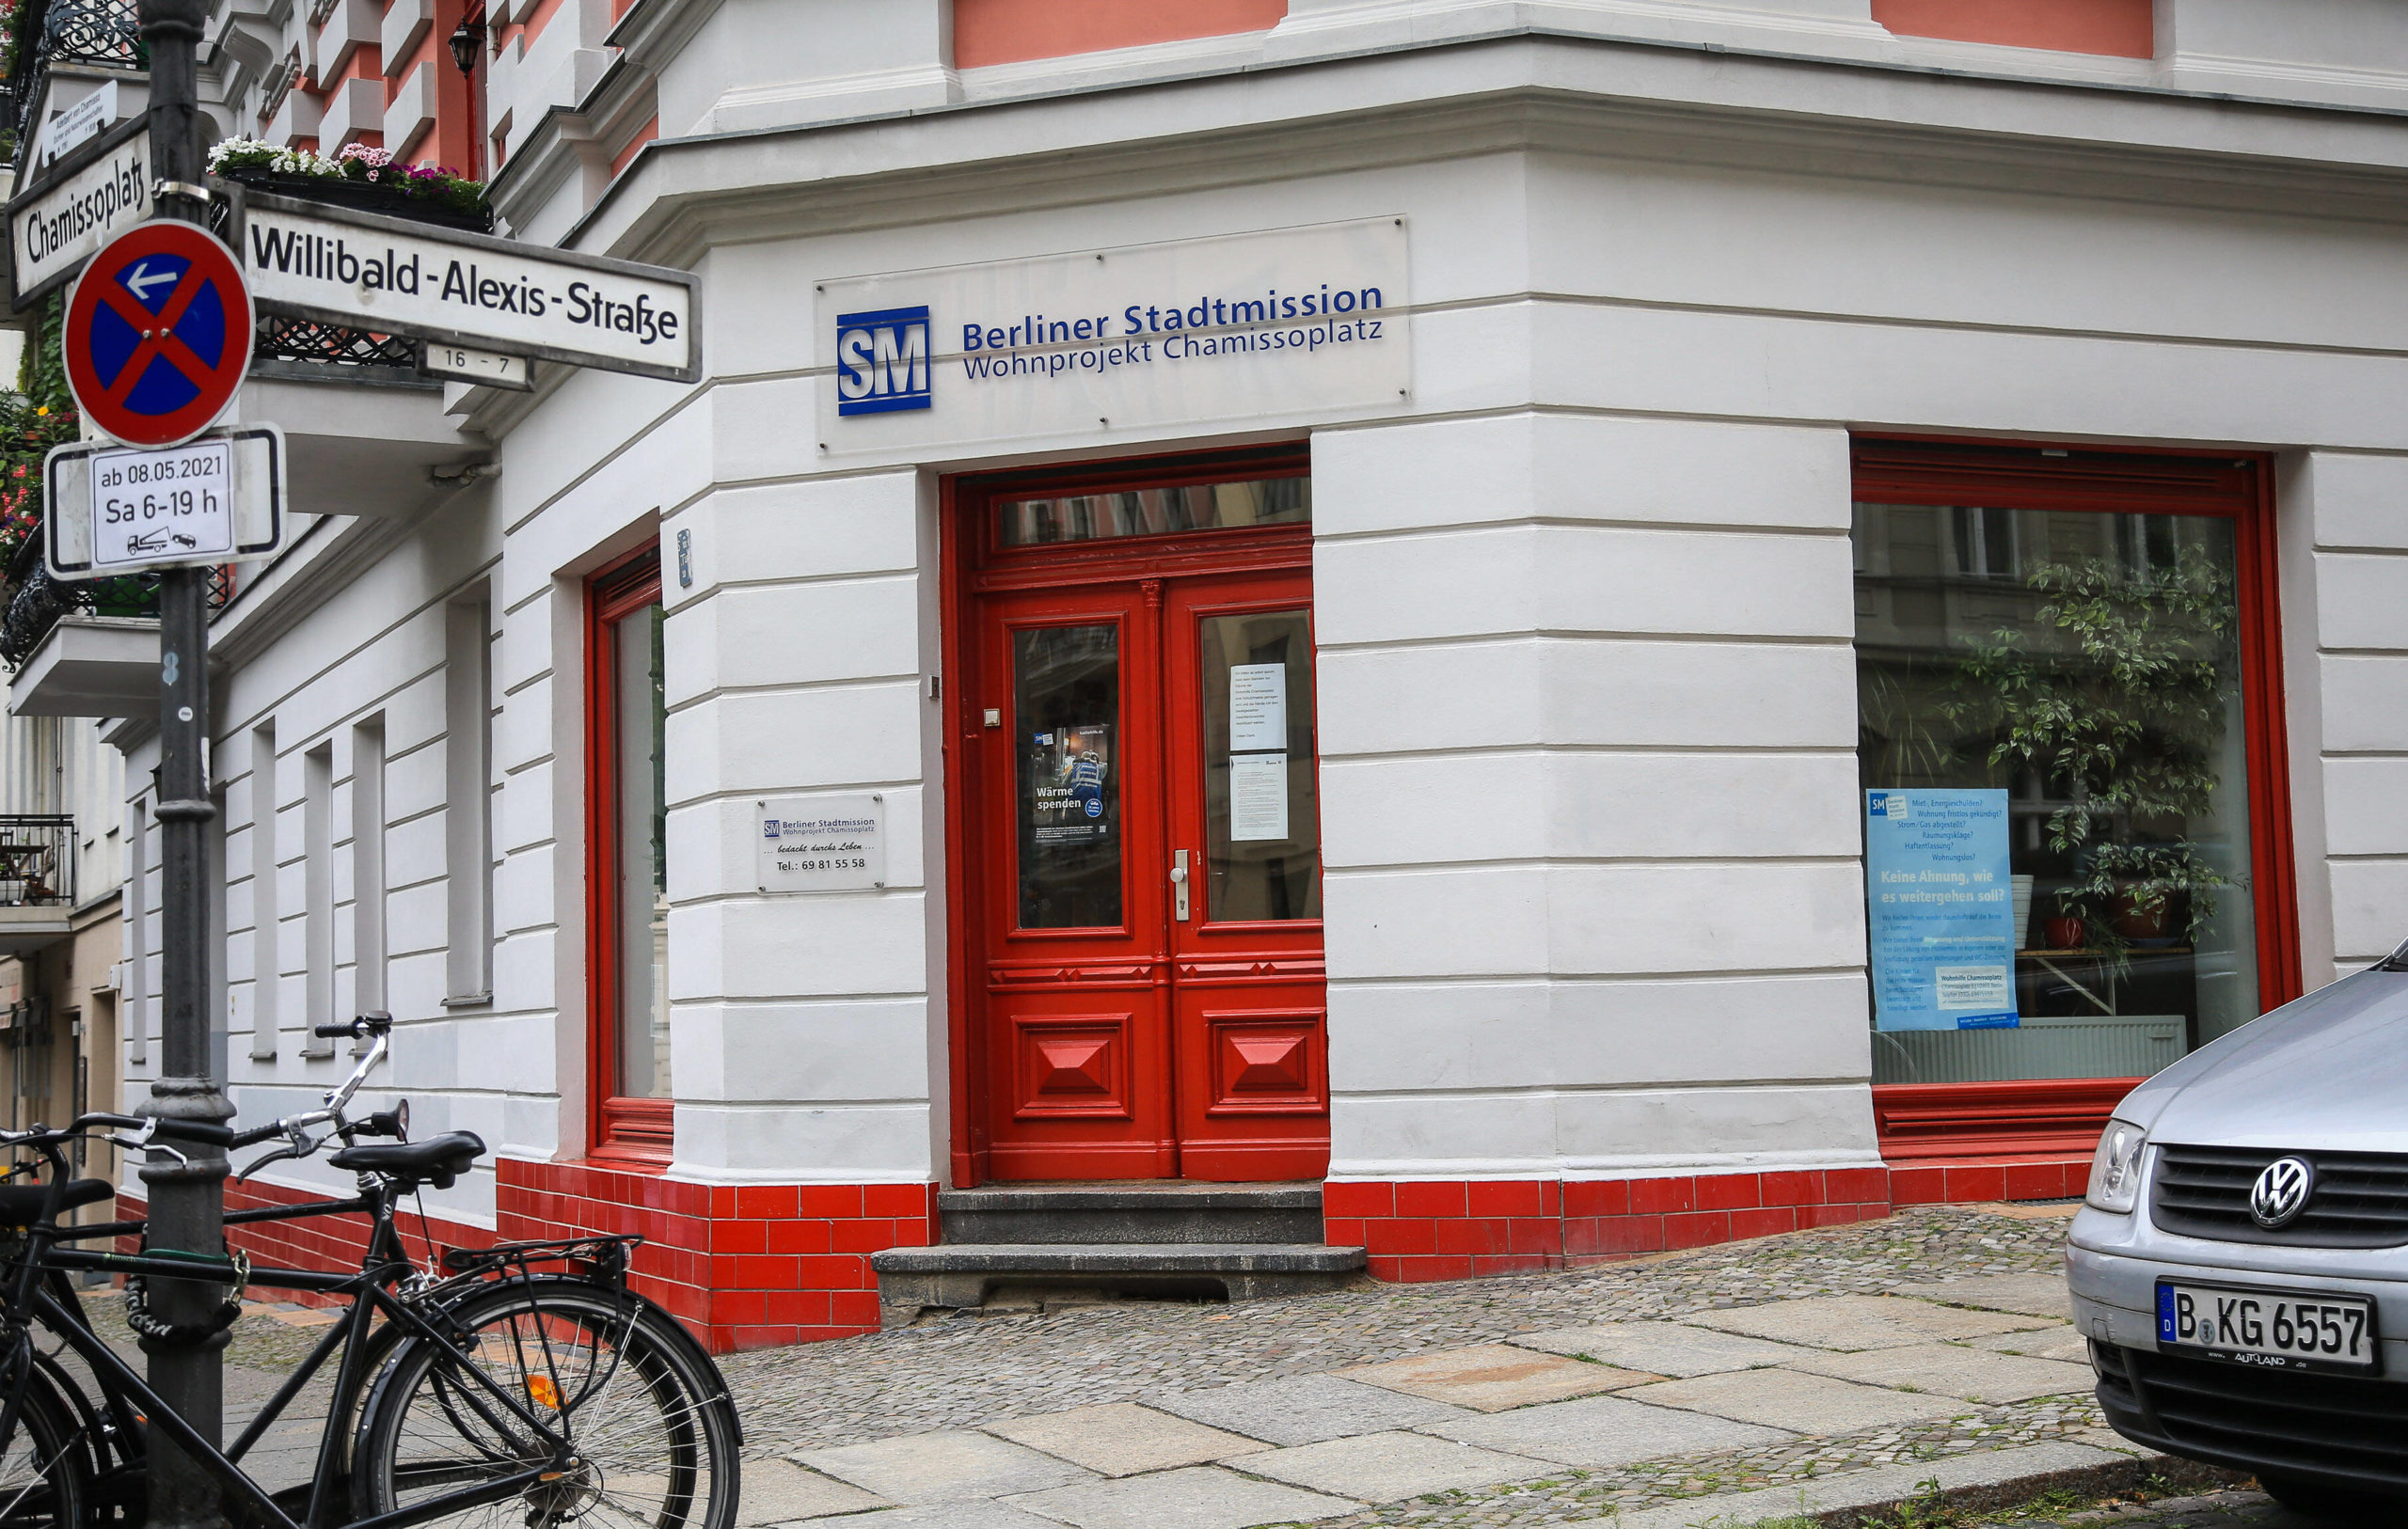 Wohltätigkeit in Berlin Die Berliner Stadtmission hilft obdachlosen Menschen auf verschiedenste Weise. Und wir können helfen durch Geld- und Sachspenden.